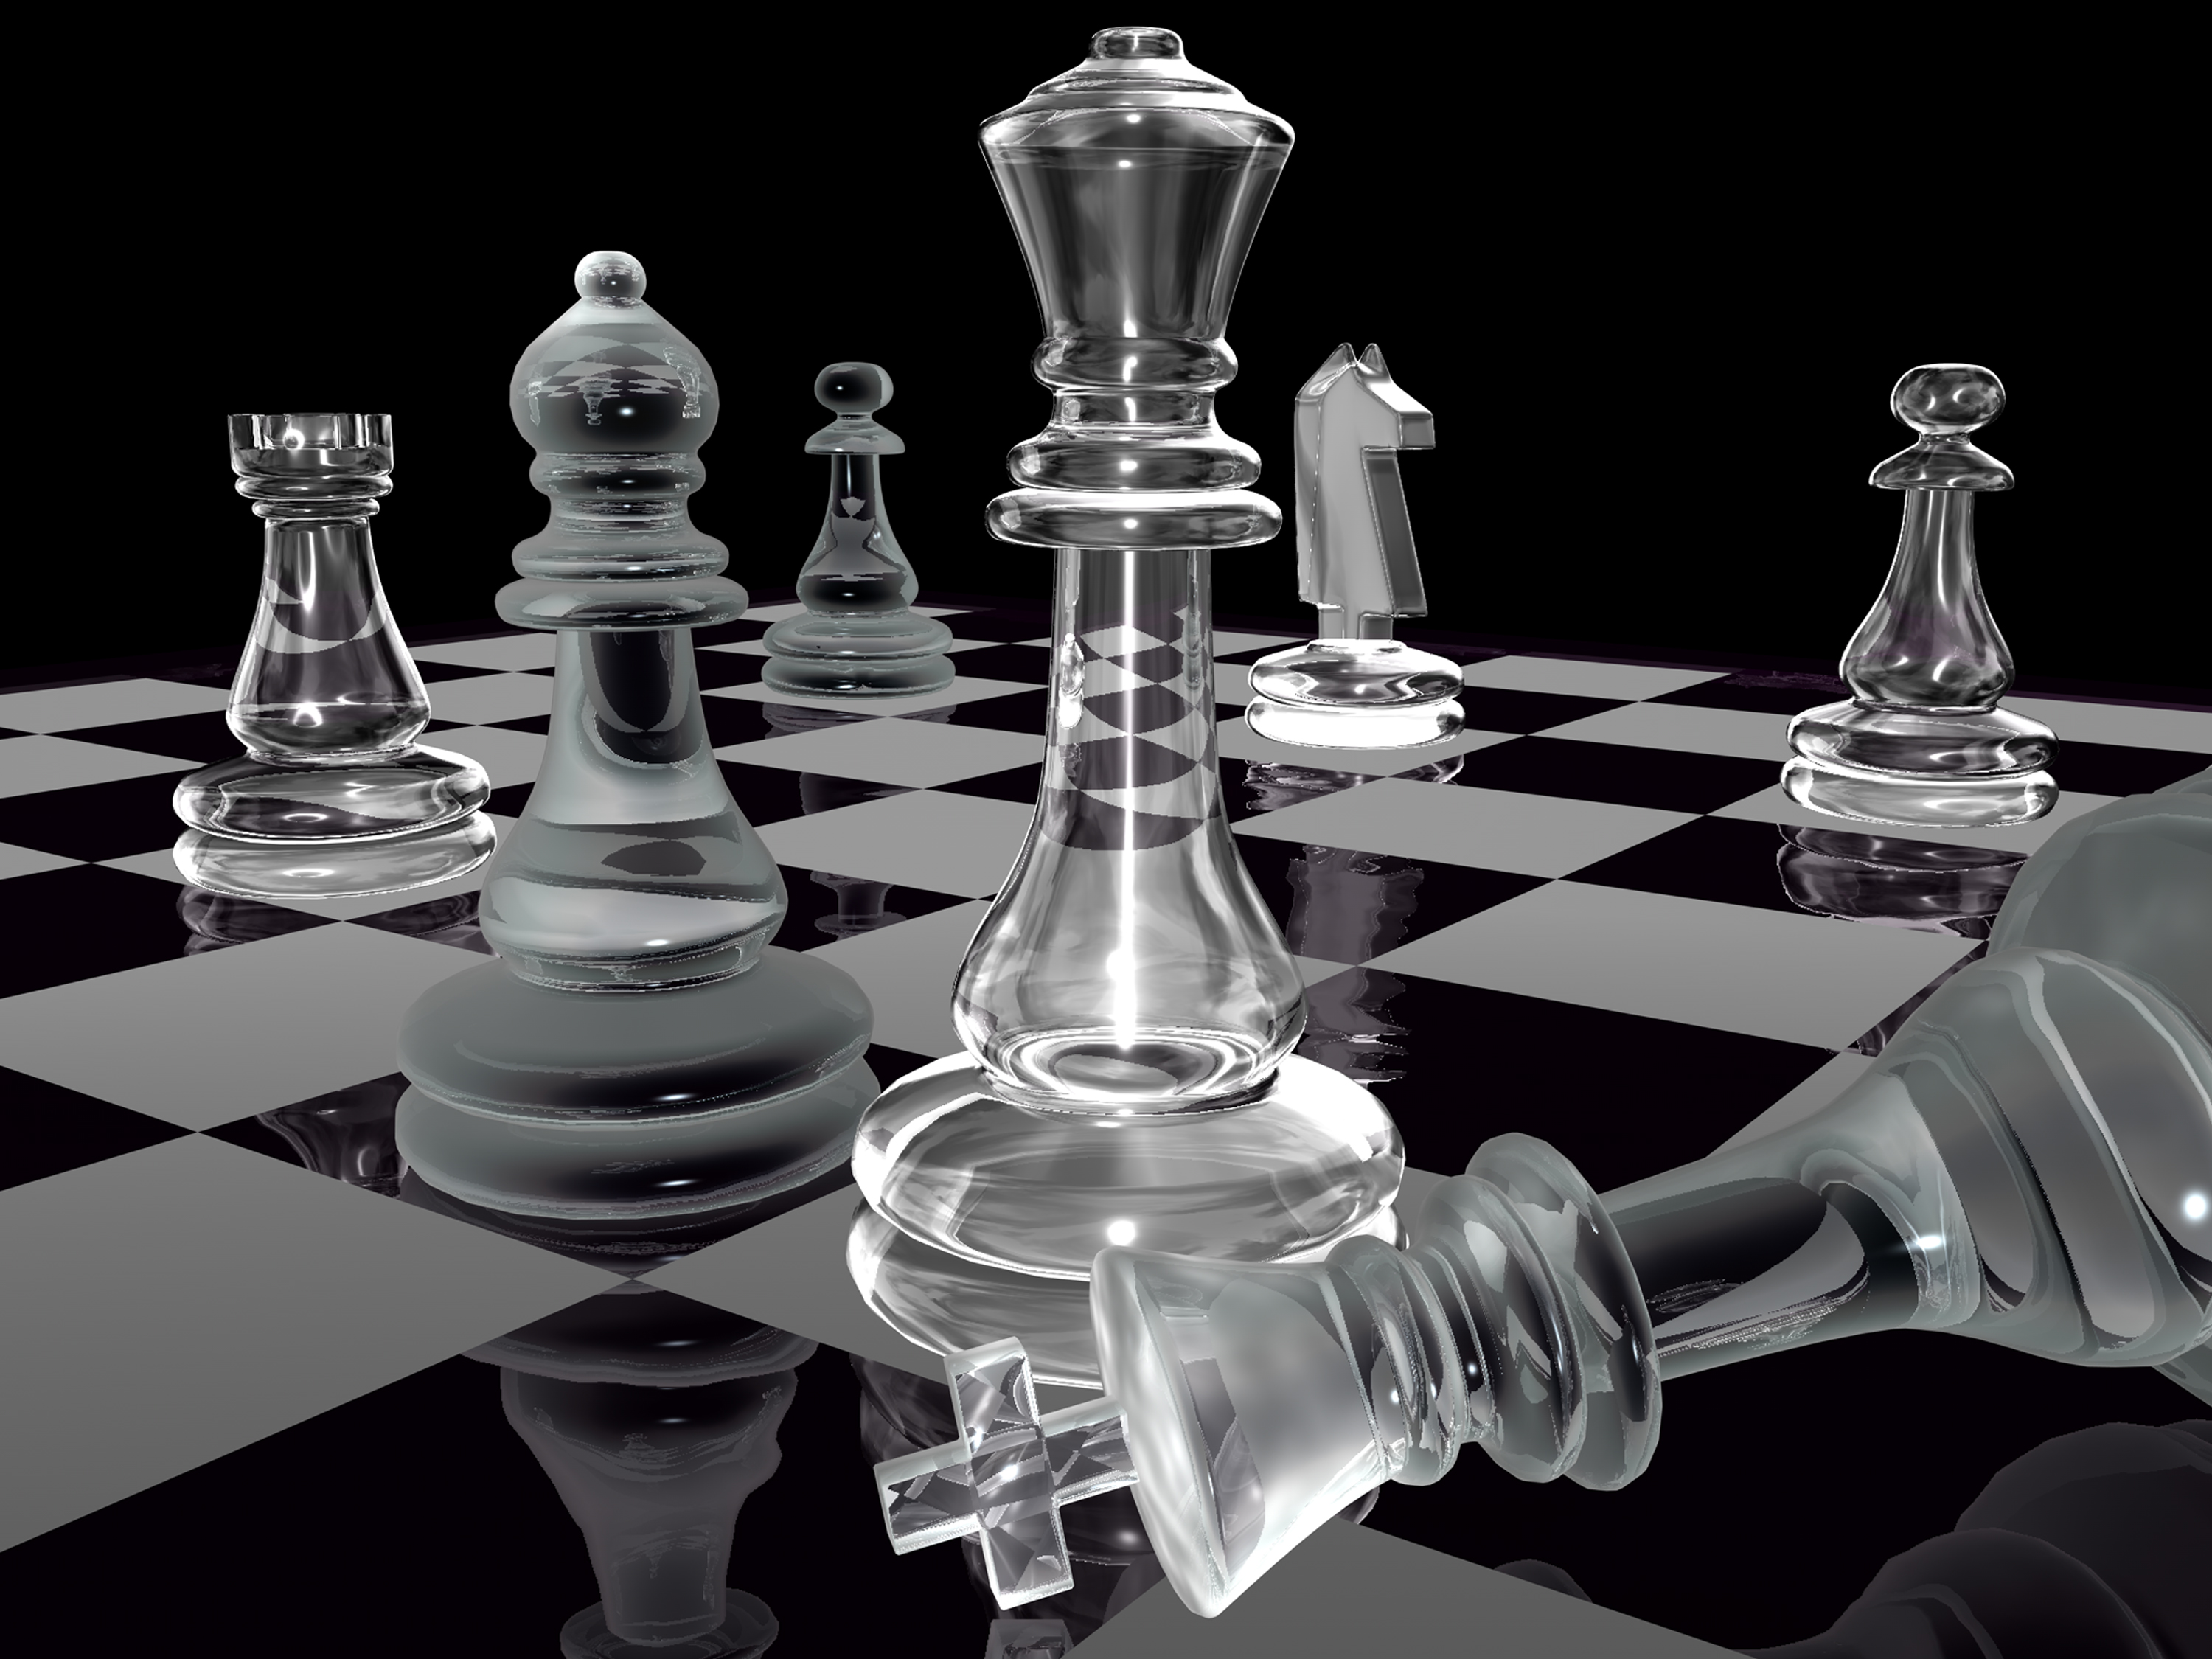 Βράβευση μελών της Σκακιστικής Ακαδημίας Χανίων